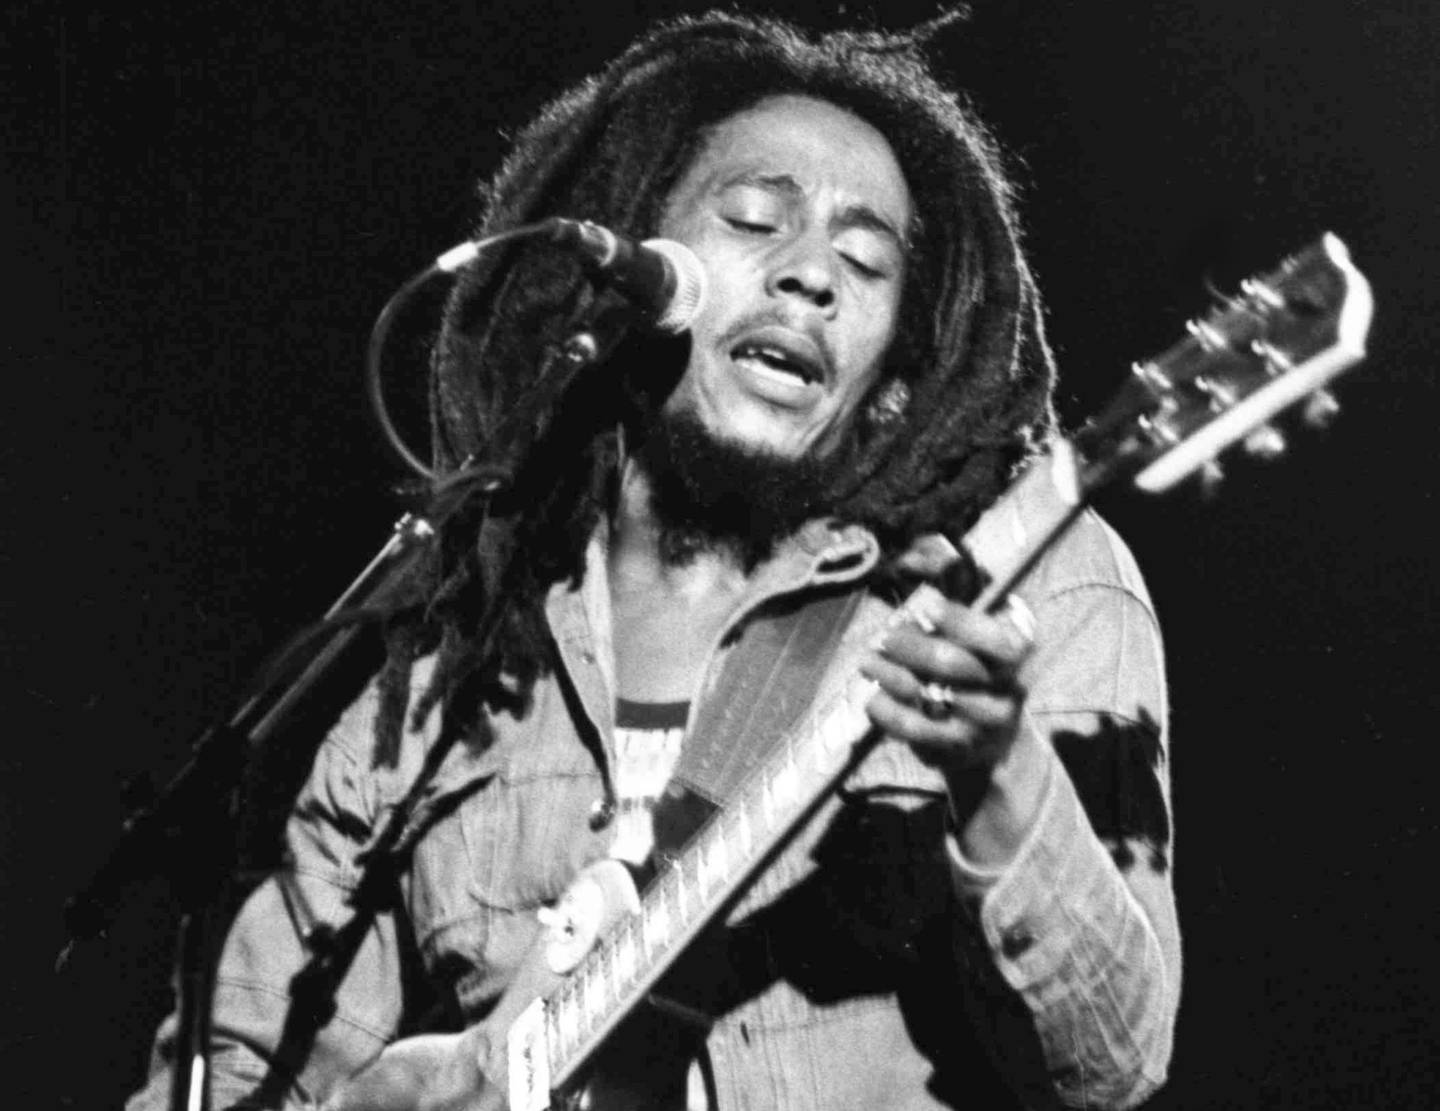 Bob Marley i egen person i 1980.